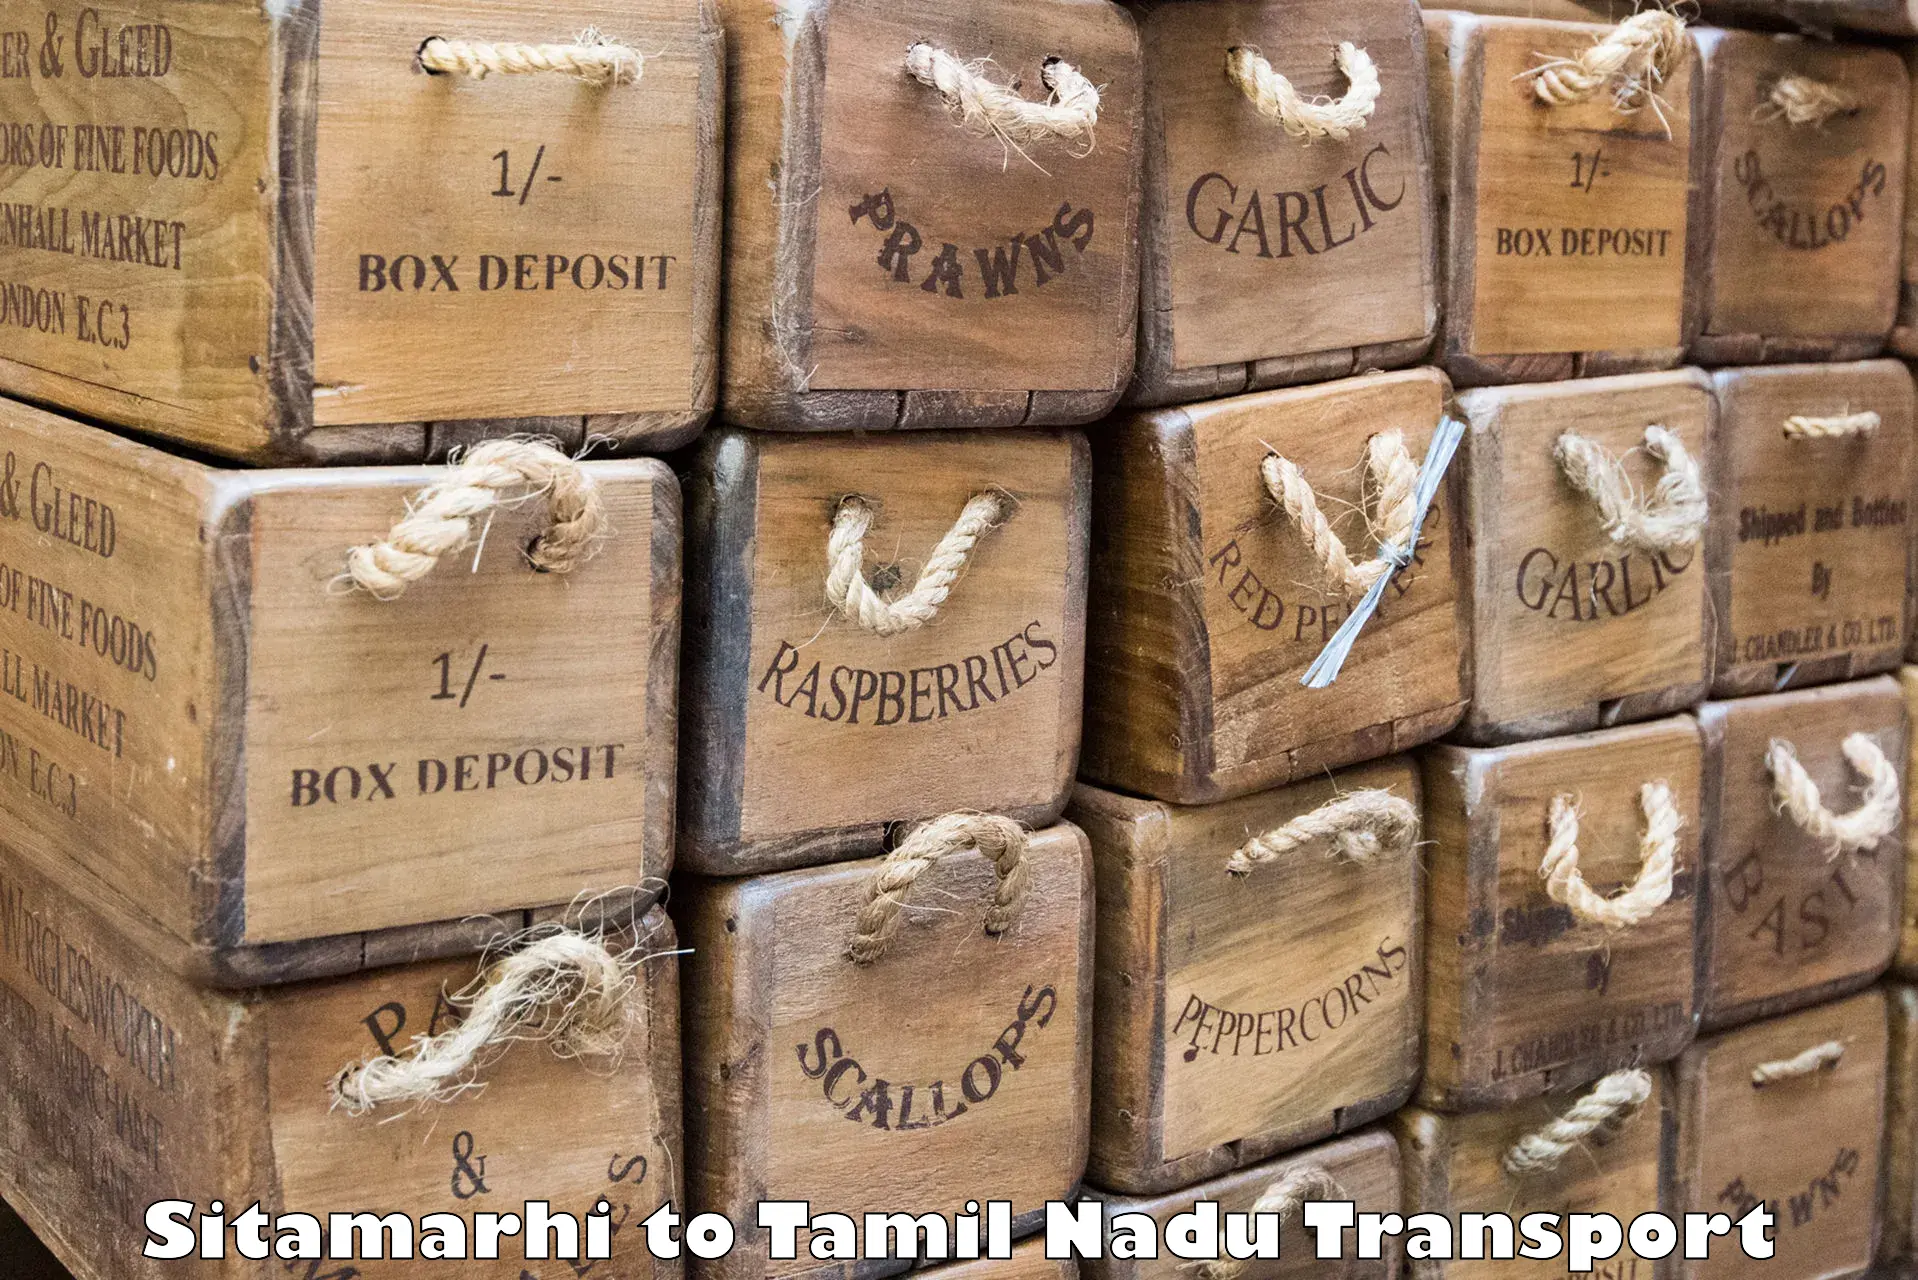 Nearest transport service Sitamarhi to Devakottai